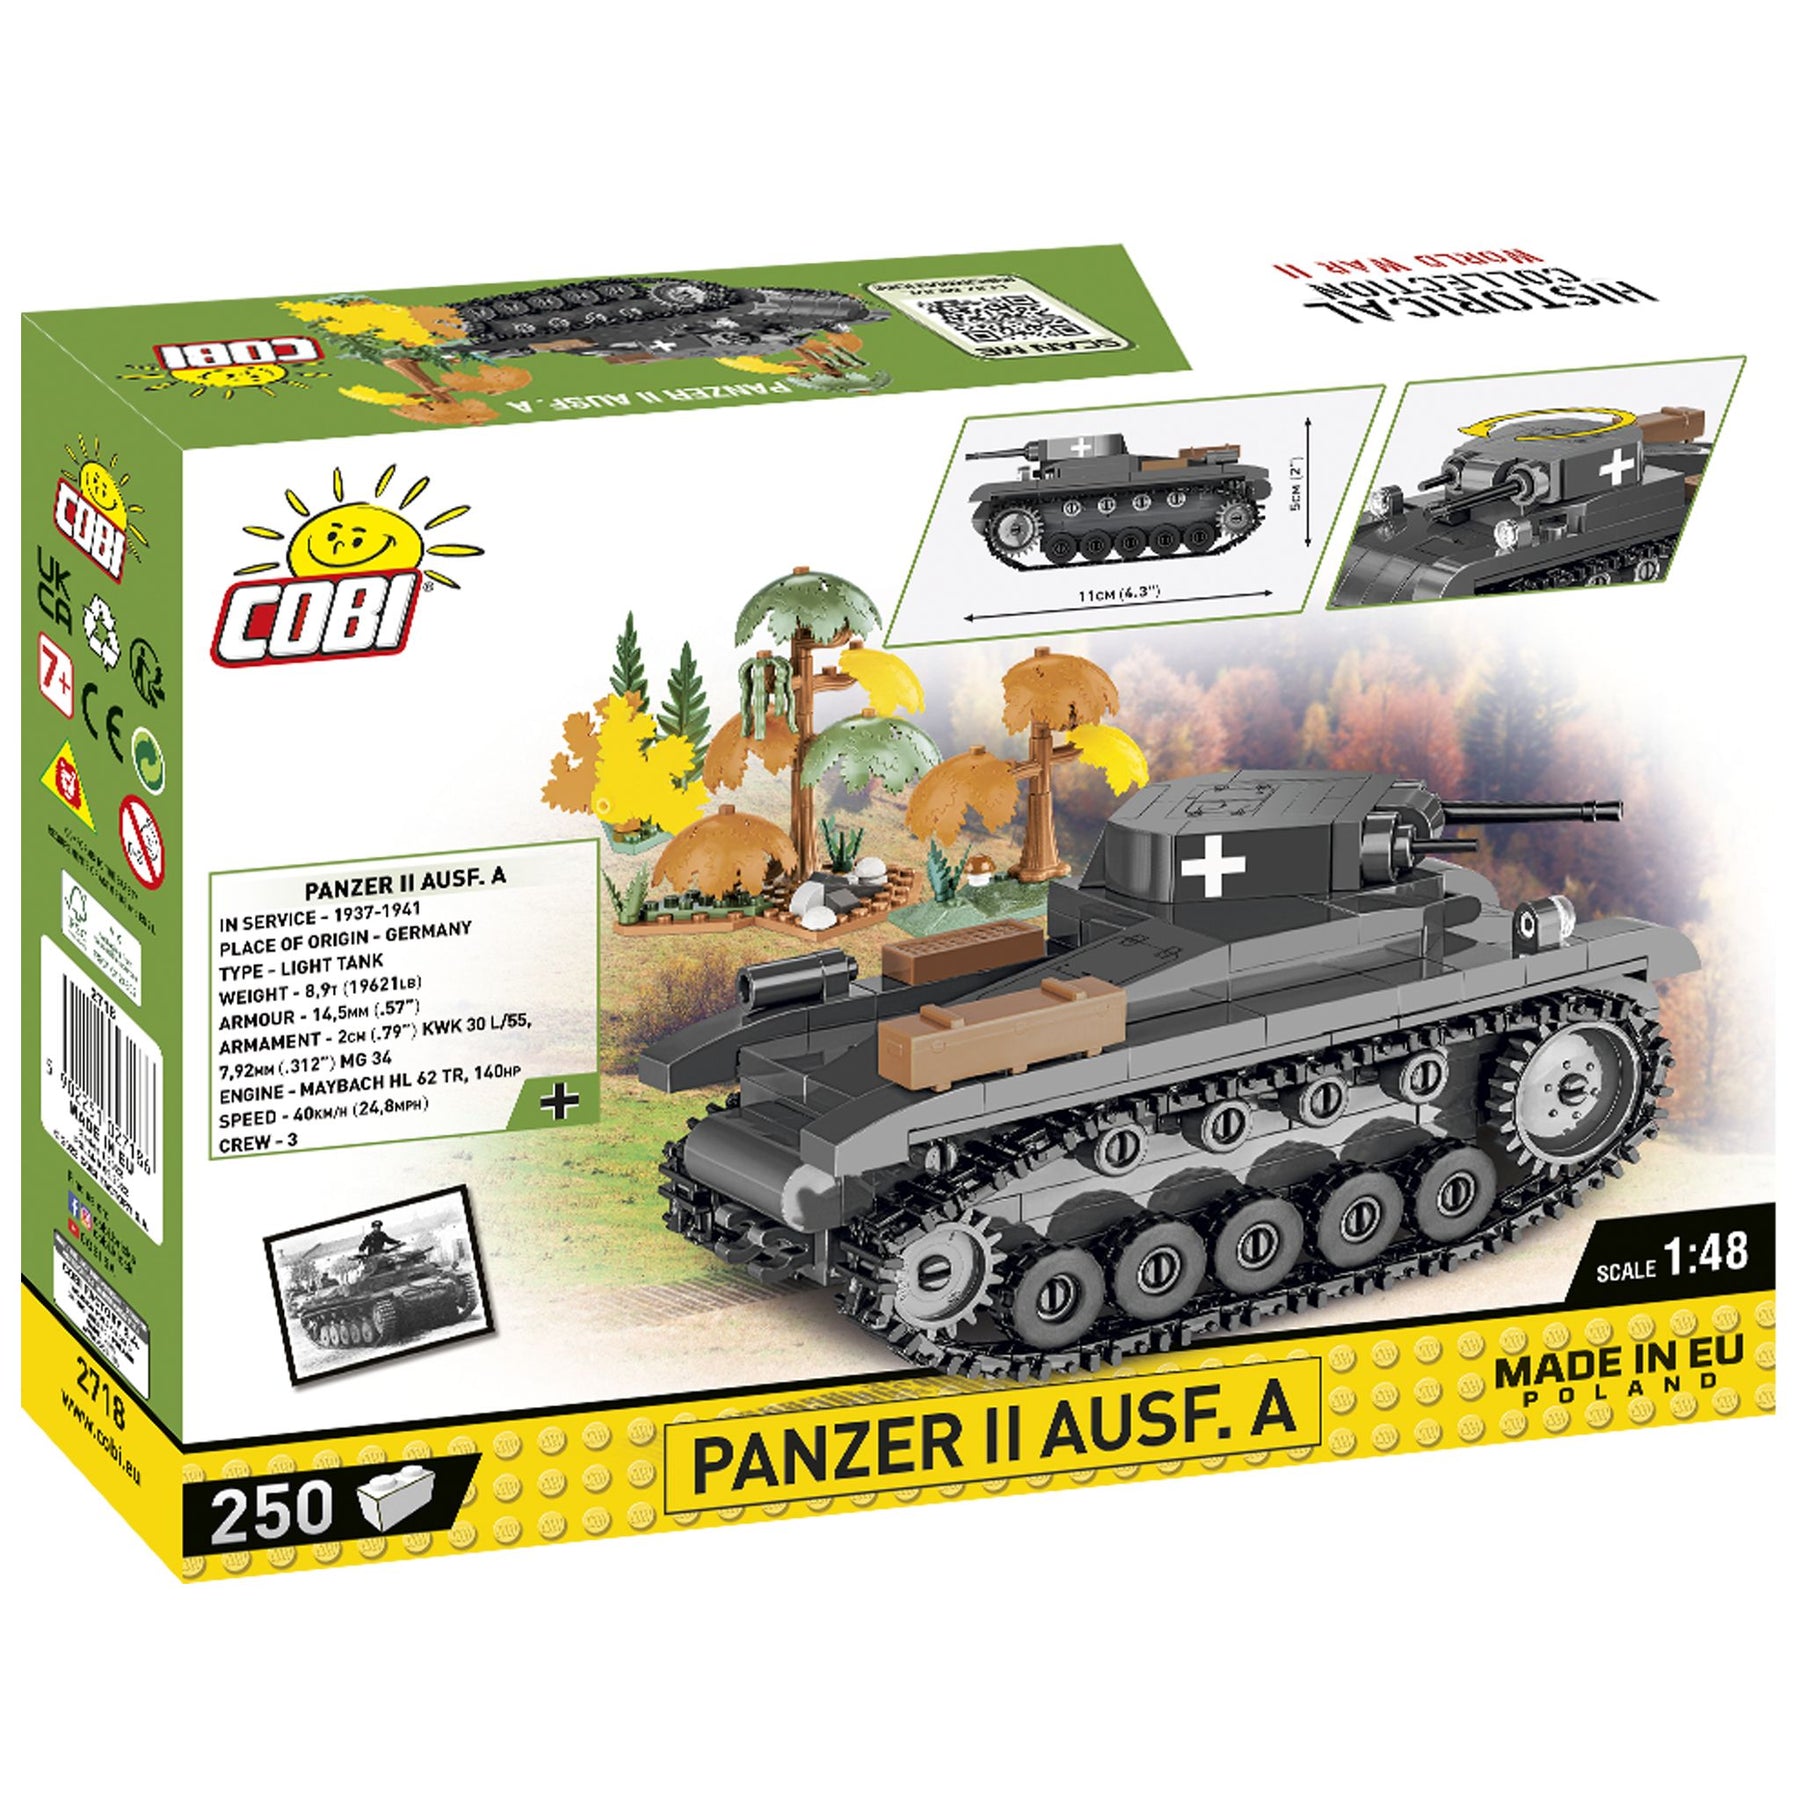 CB-2718 Panzer II Ausf.A (Cobi)